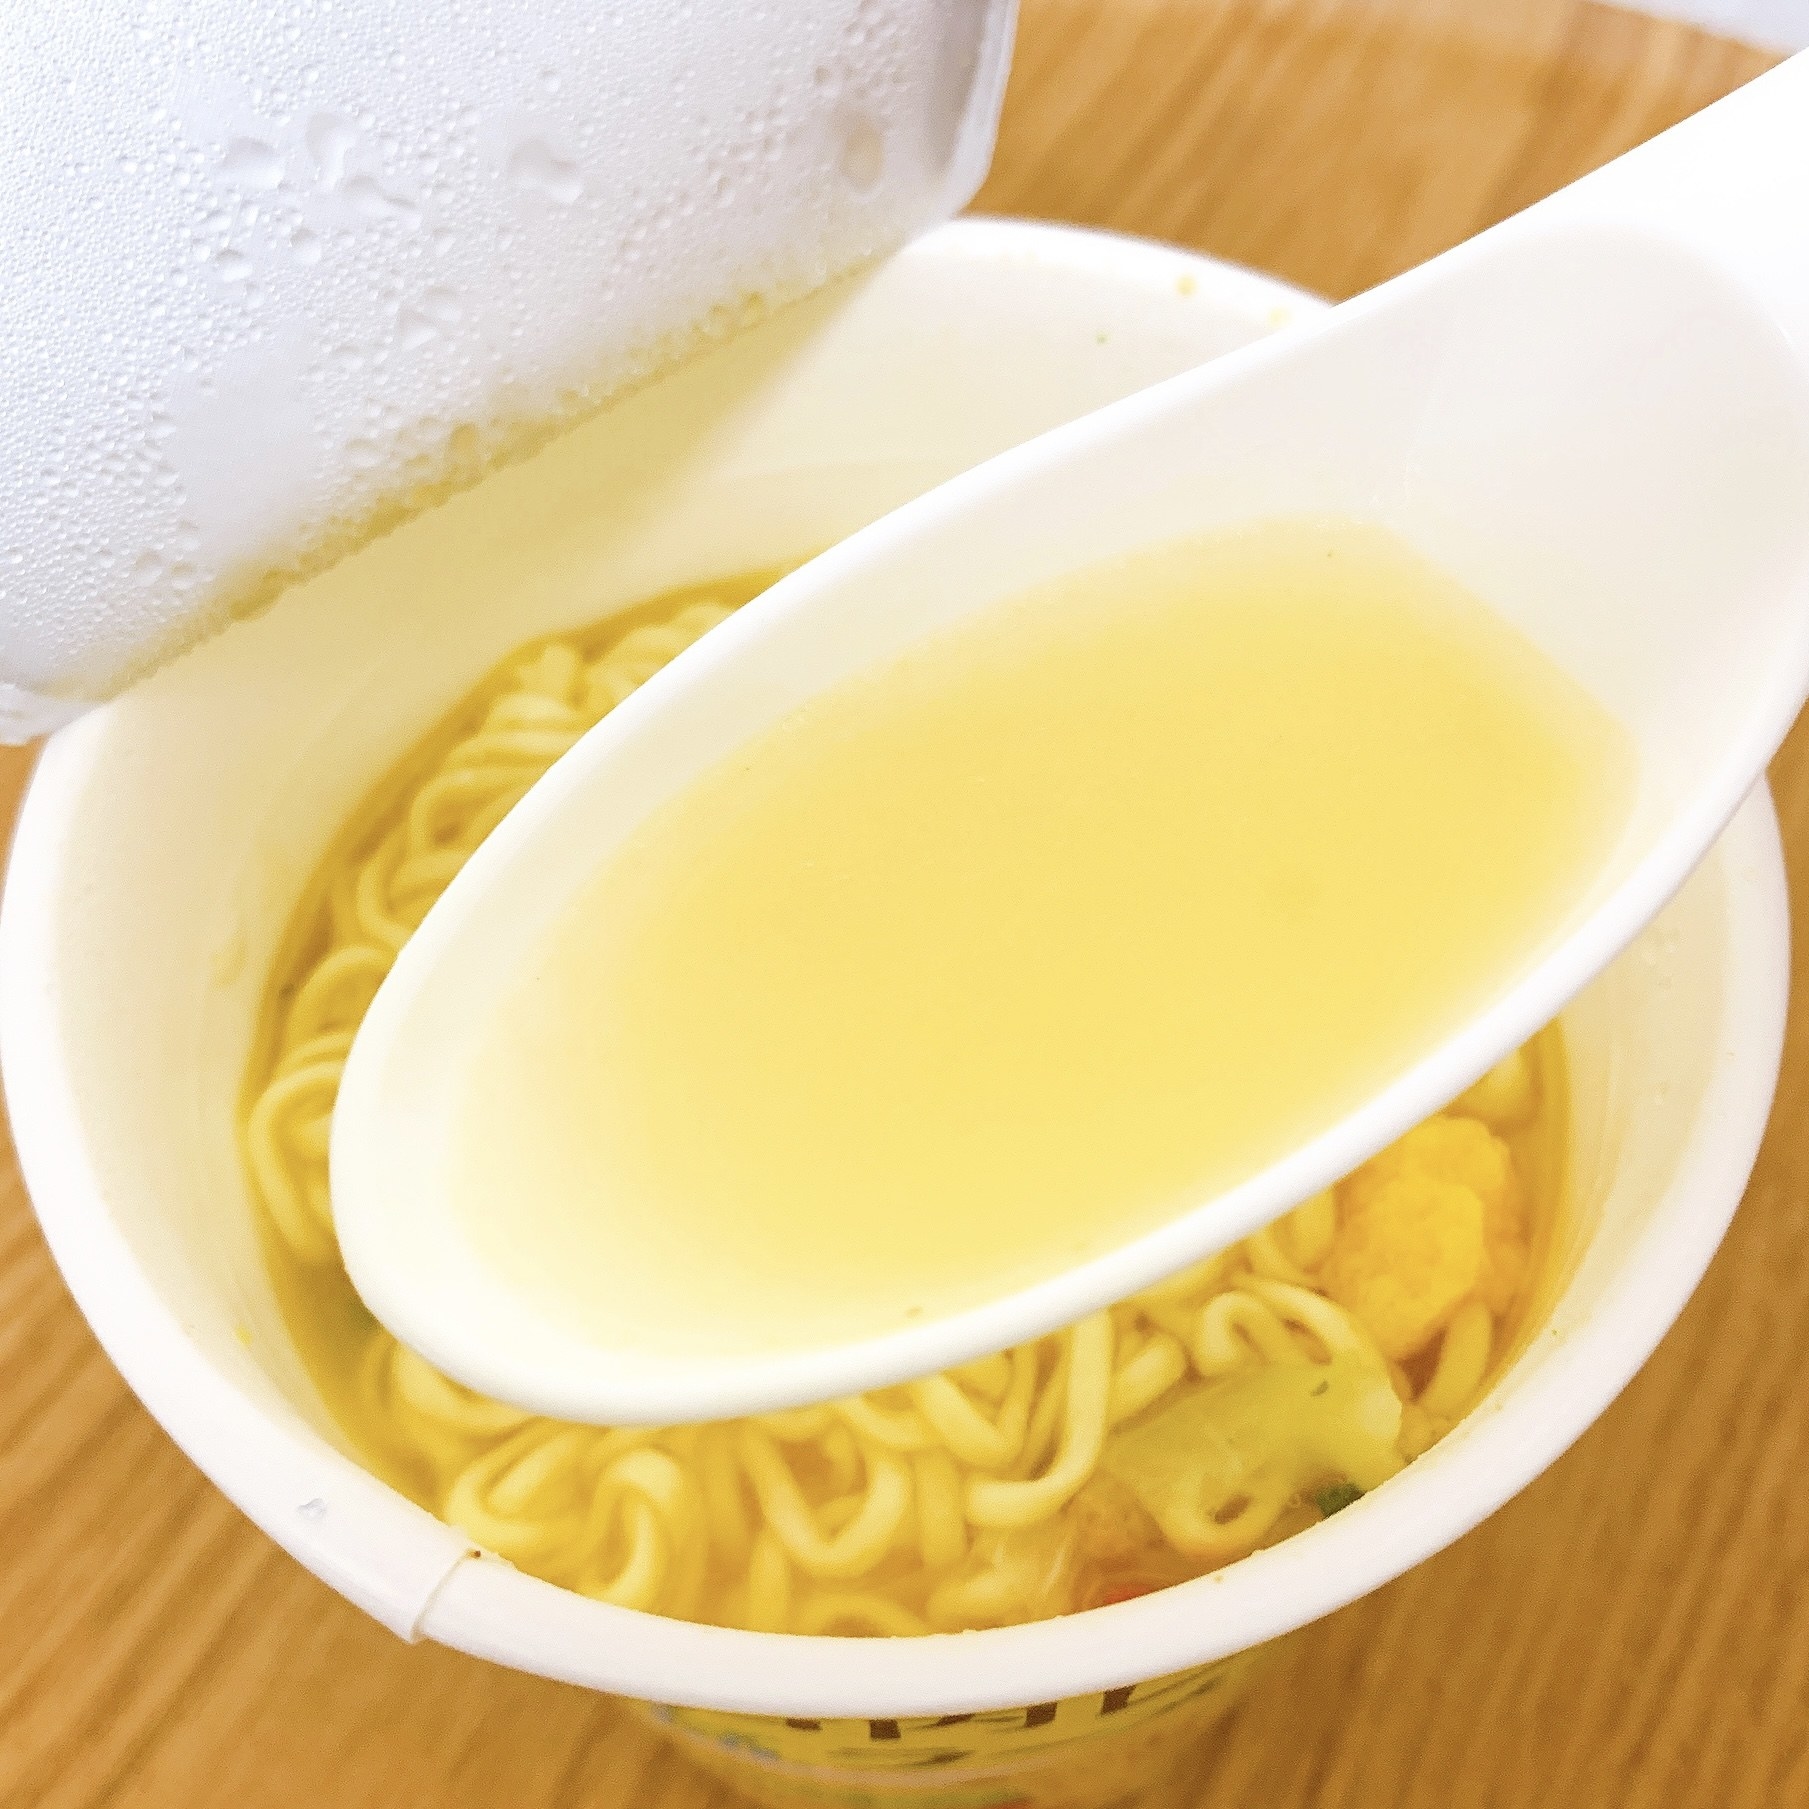 KALDI（カルディ）の夏おすすめカップ麺「瀬戸内レモン塩ラーメン」さっぱりしていておいしい